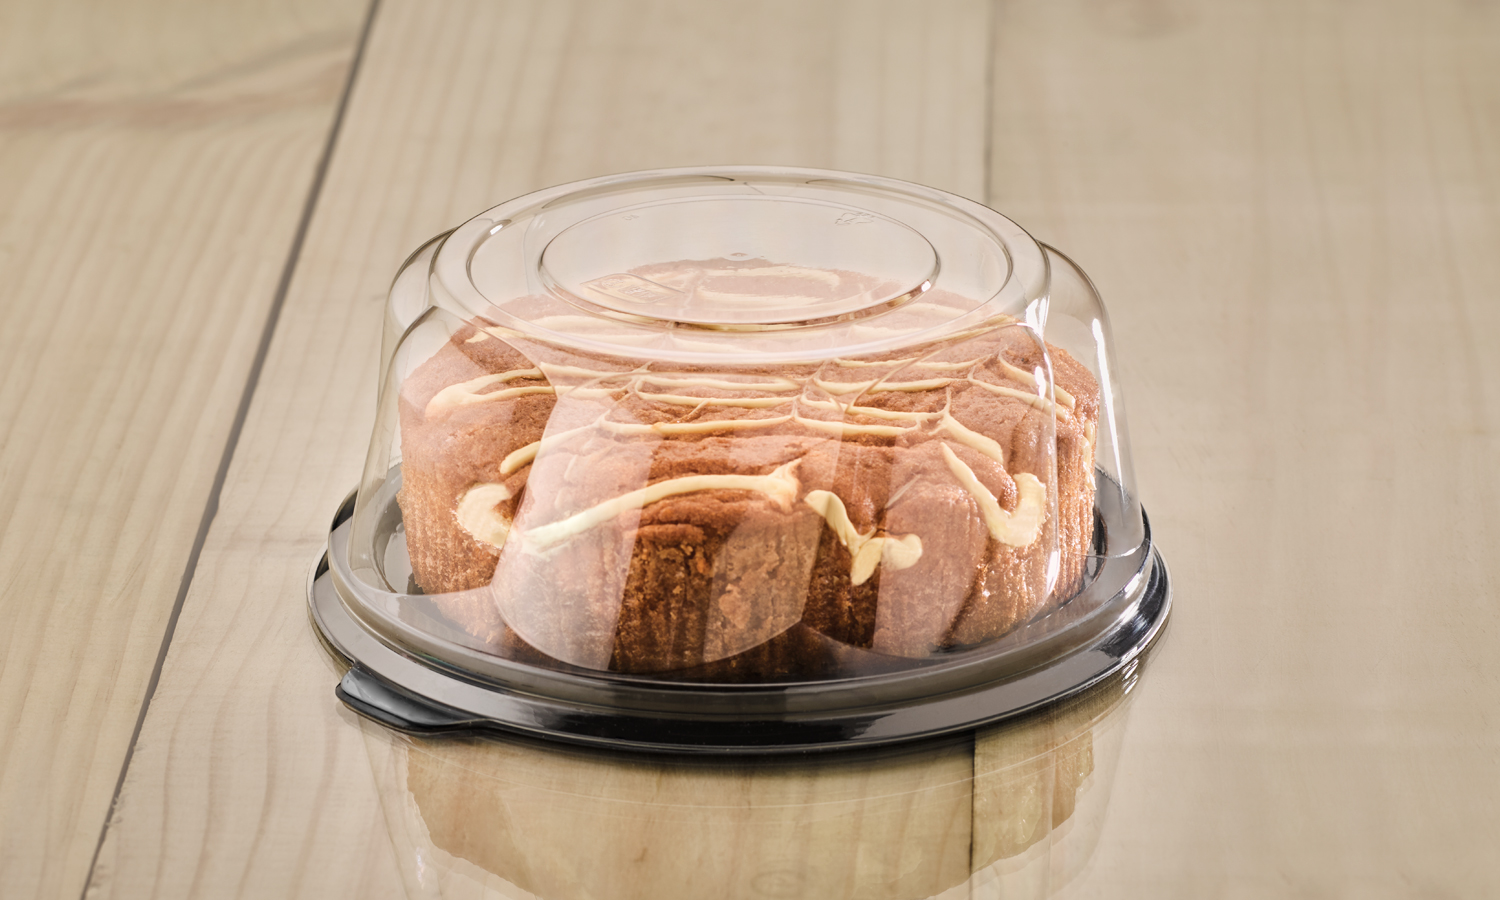 resq-reg-round-visual-cake-domes